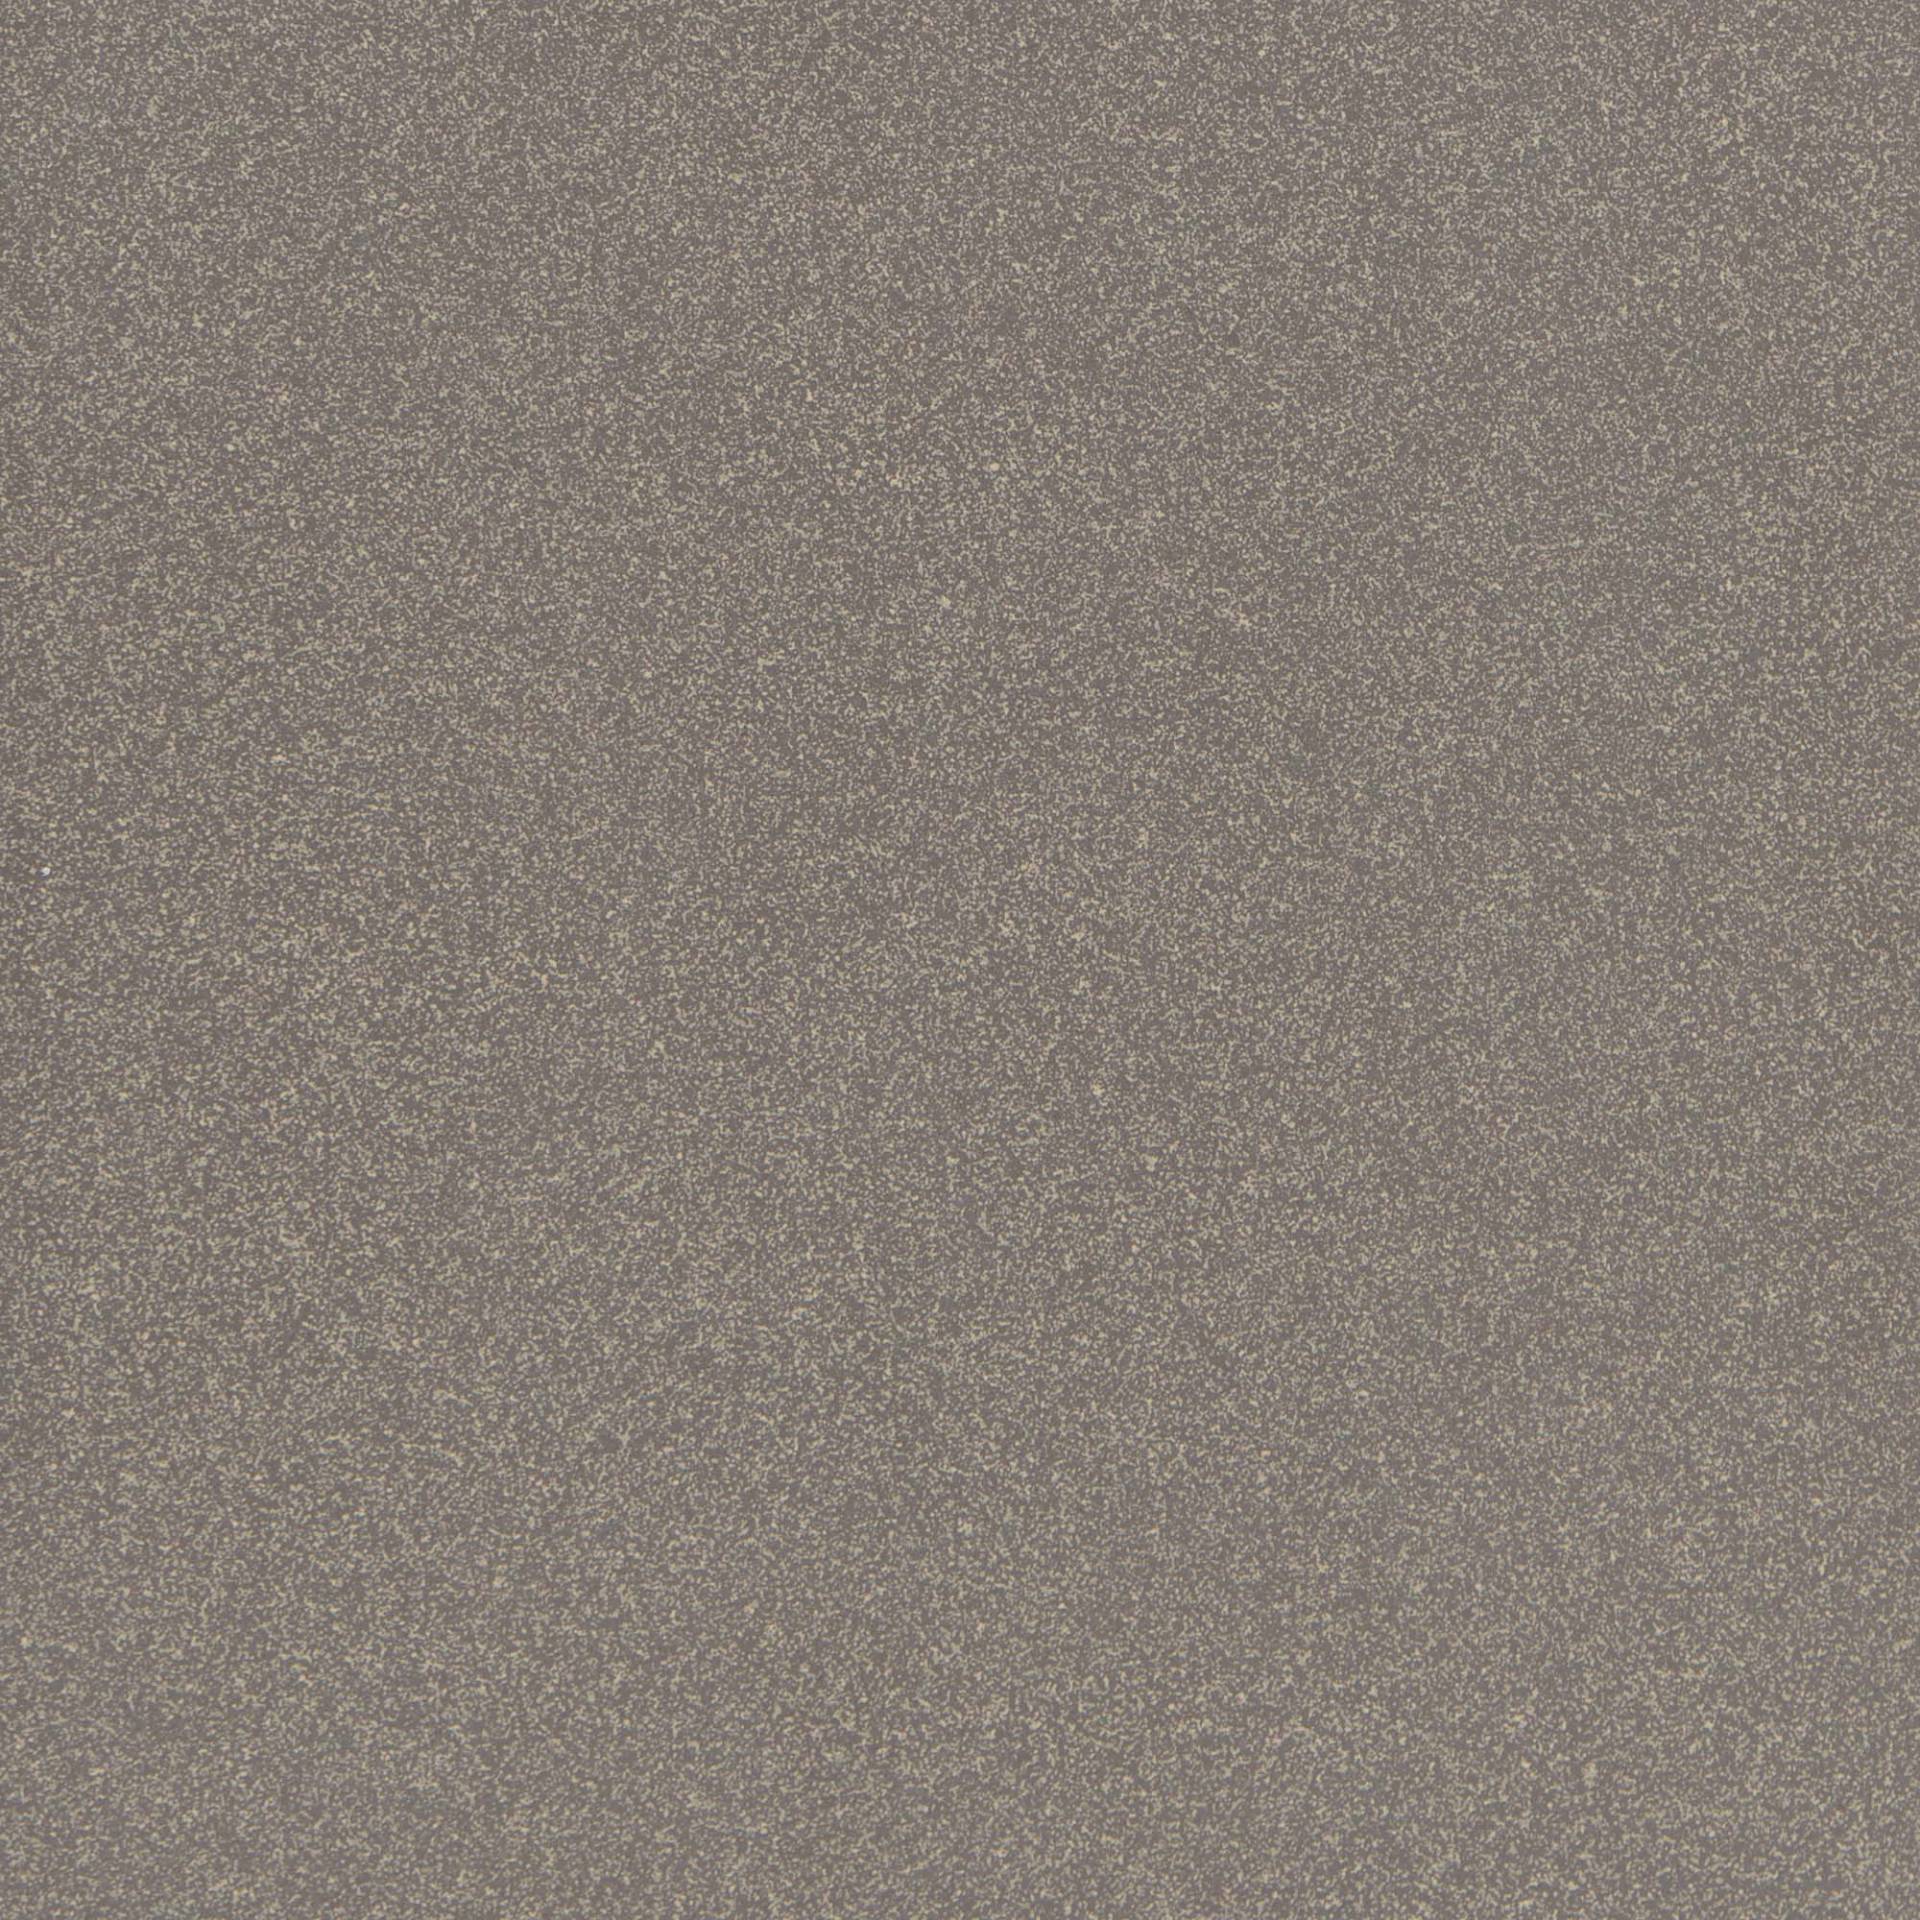 Bodenfliese 'Triton' Feinsteinzeug schwarz 30 x 30 cm